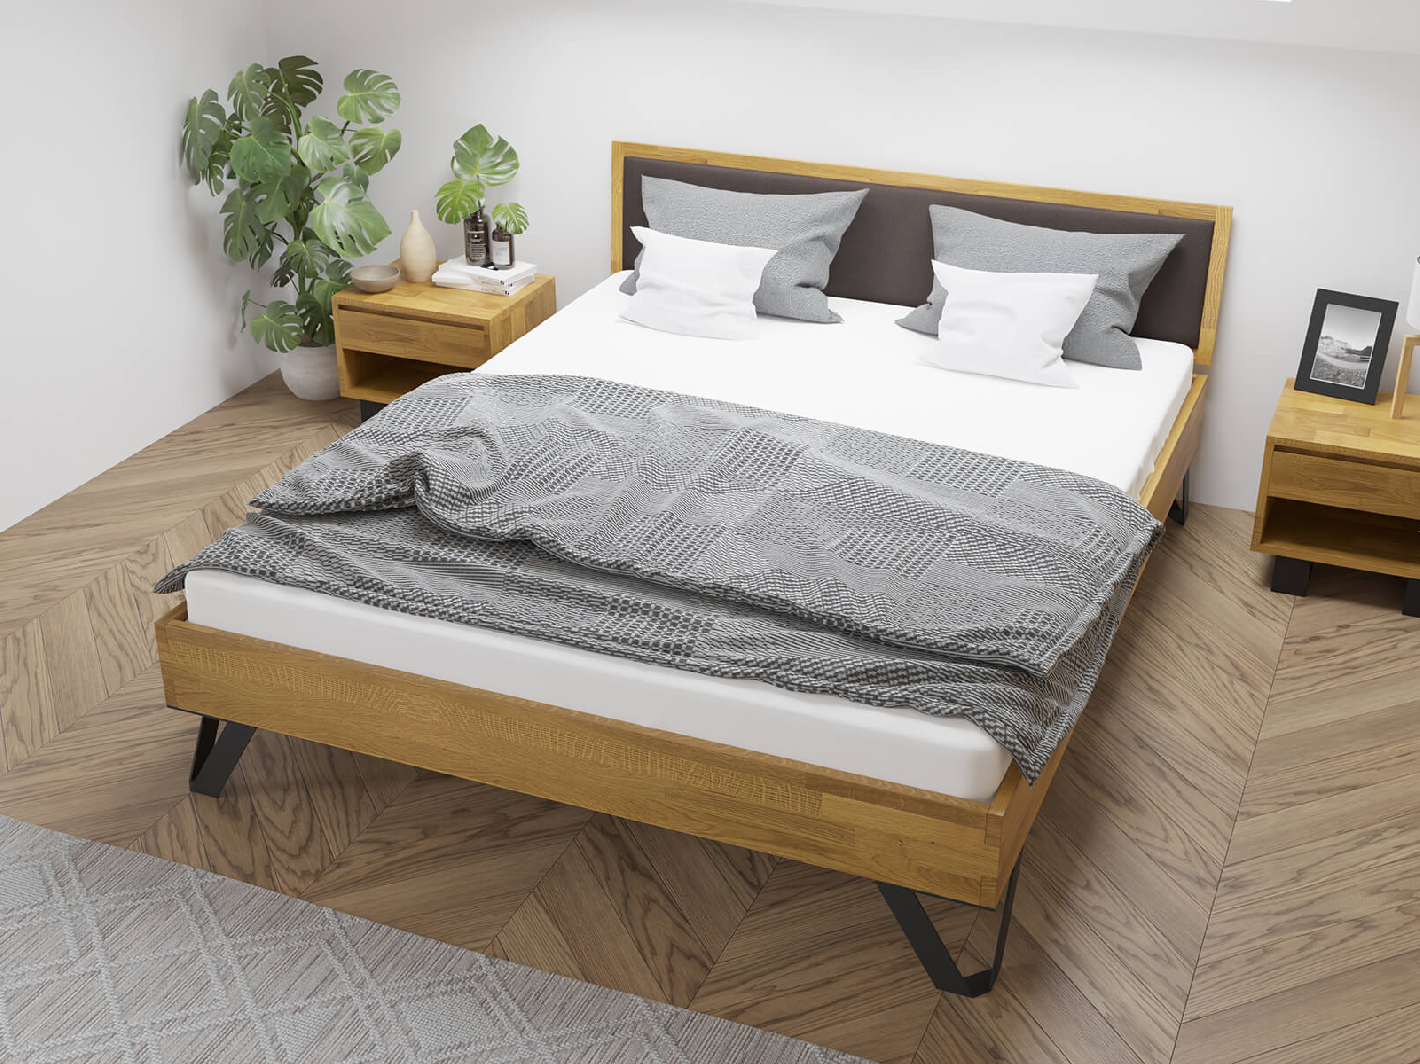 Dubová postel Tero Soft, čalouněná 160x200 cm, dub, masiv